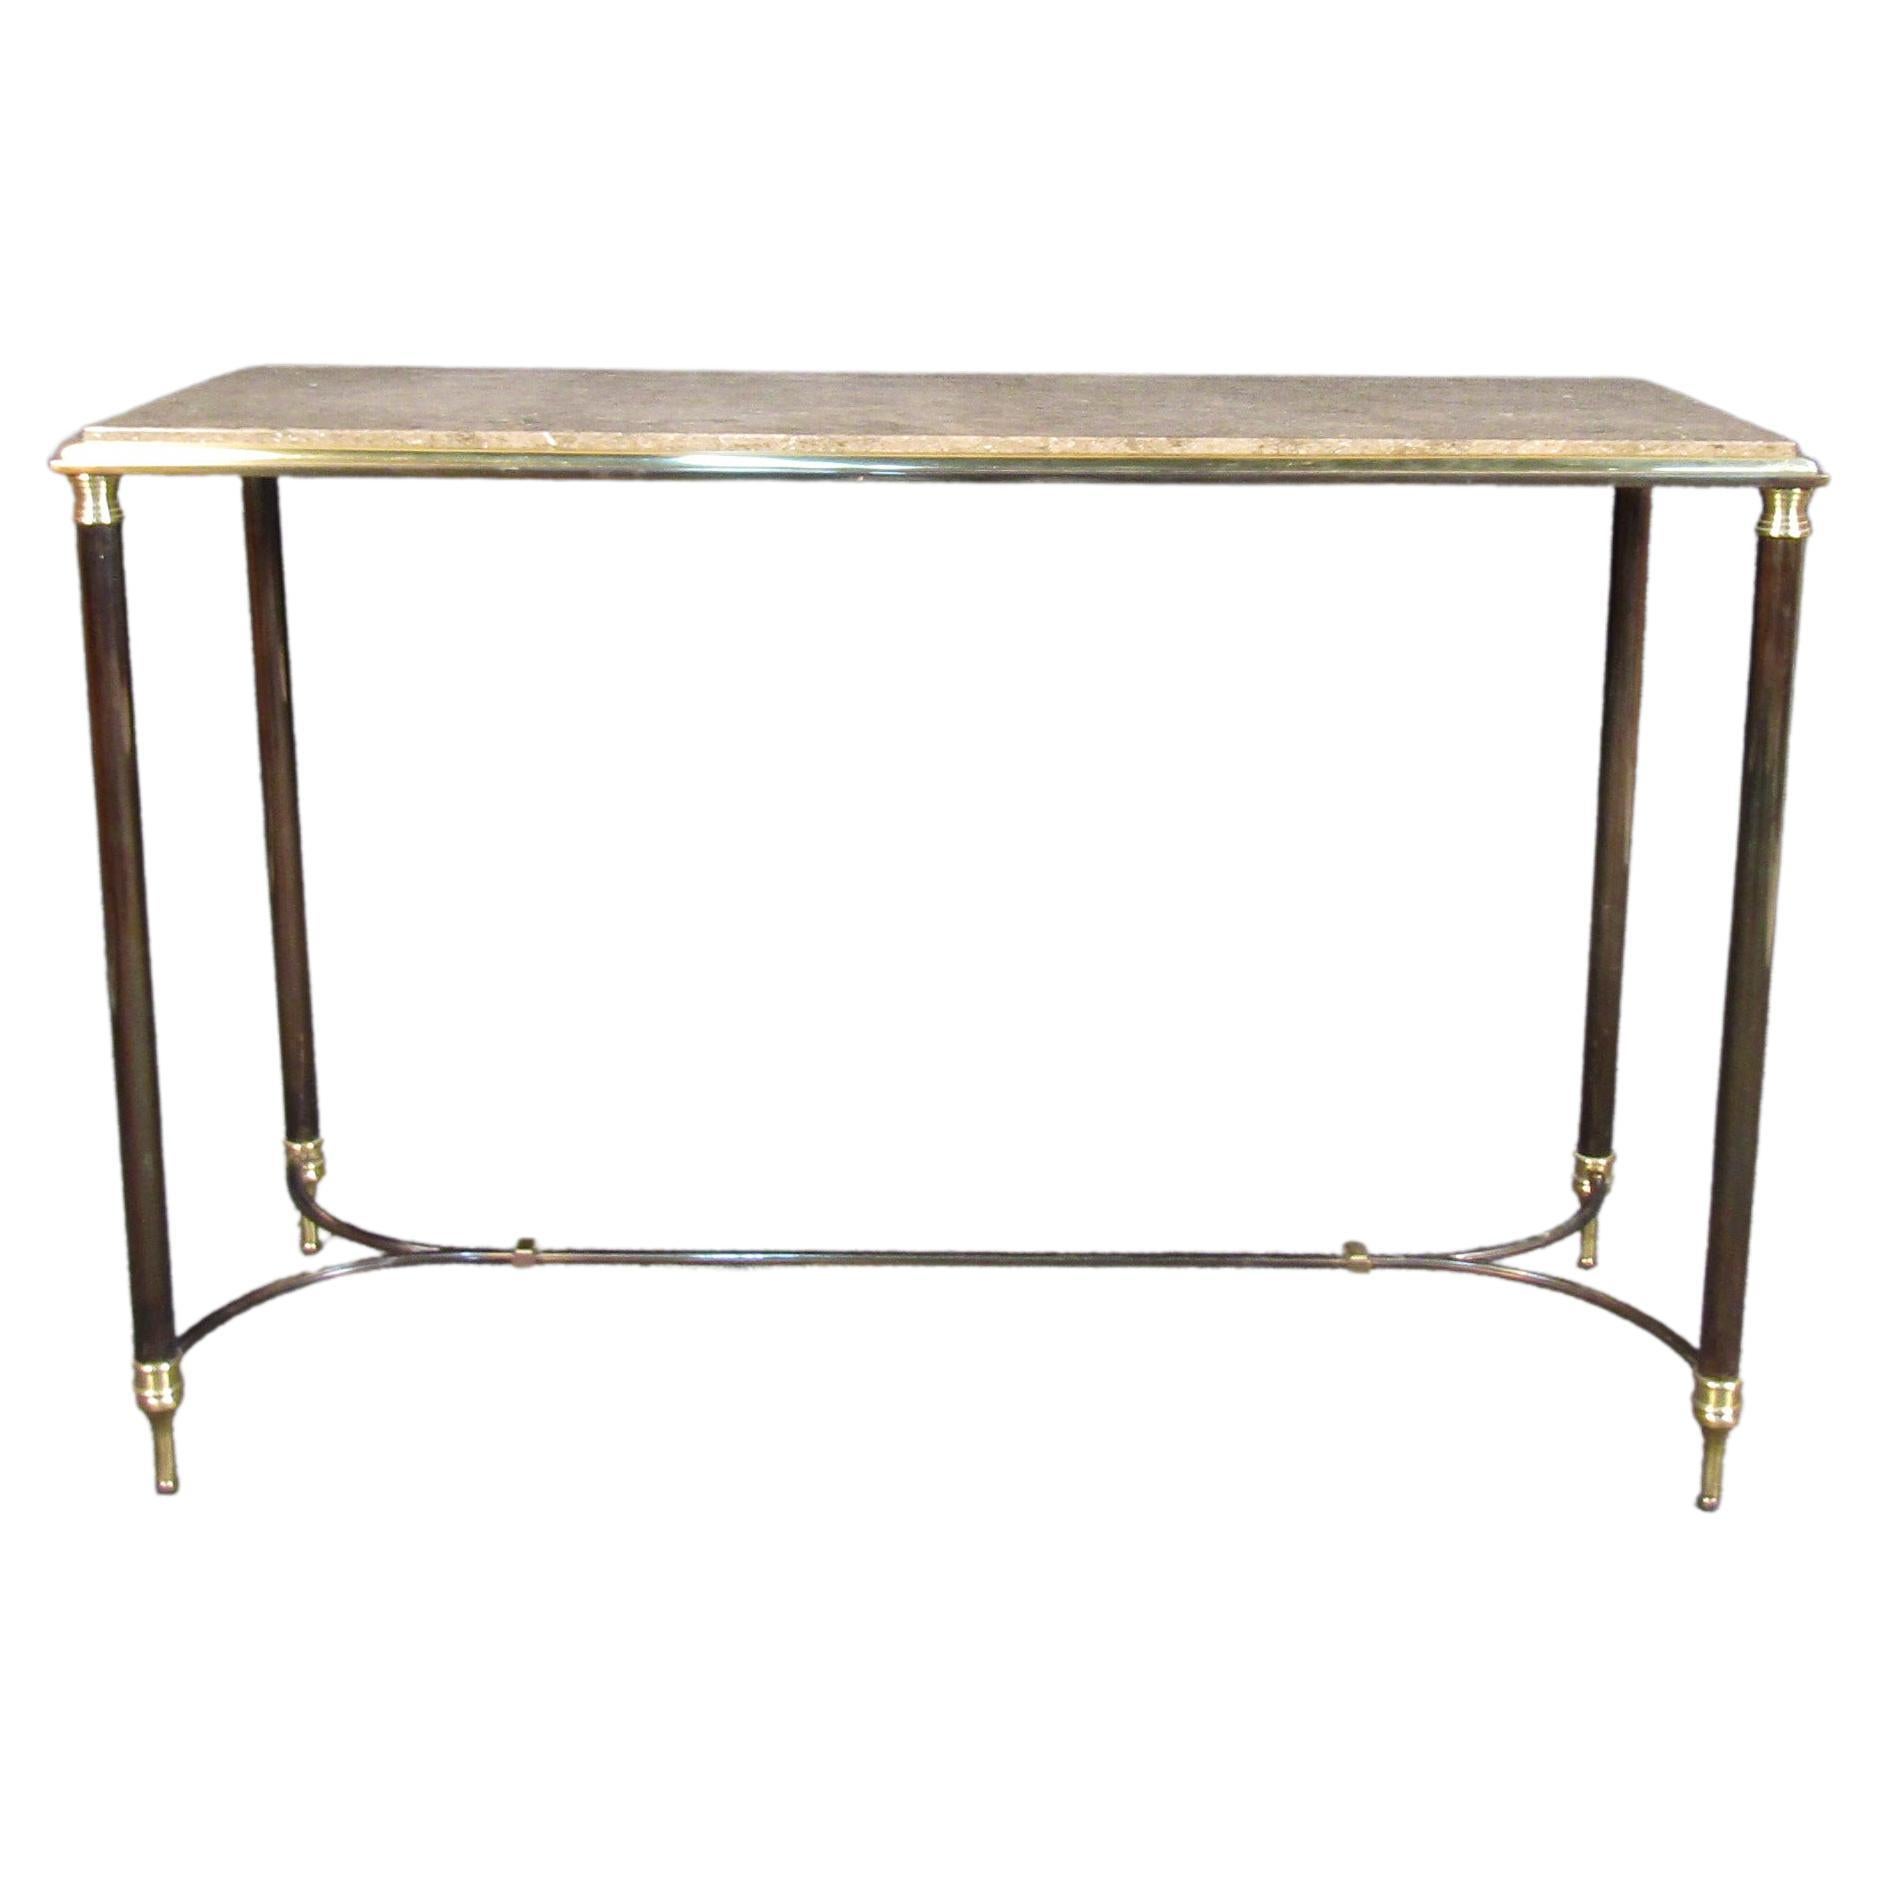 Vintage-Konsolentisch aus Metall und Marmor. Dieser Tisch zeichnet sich durch verschnörkelte Metallrahmen, Beine und Akzente aus. Die schöne abgeschrägte Kante, die zur Marmorplatte hinaufführt, ist ein Blickfang, der jeden Raum, in dem er